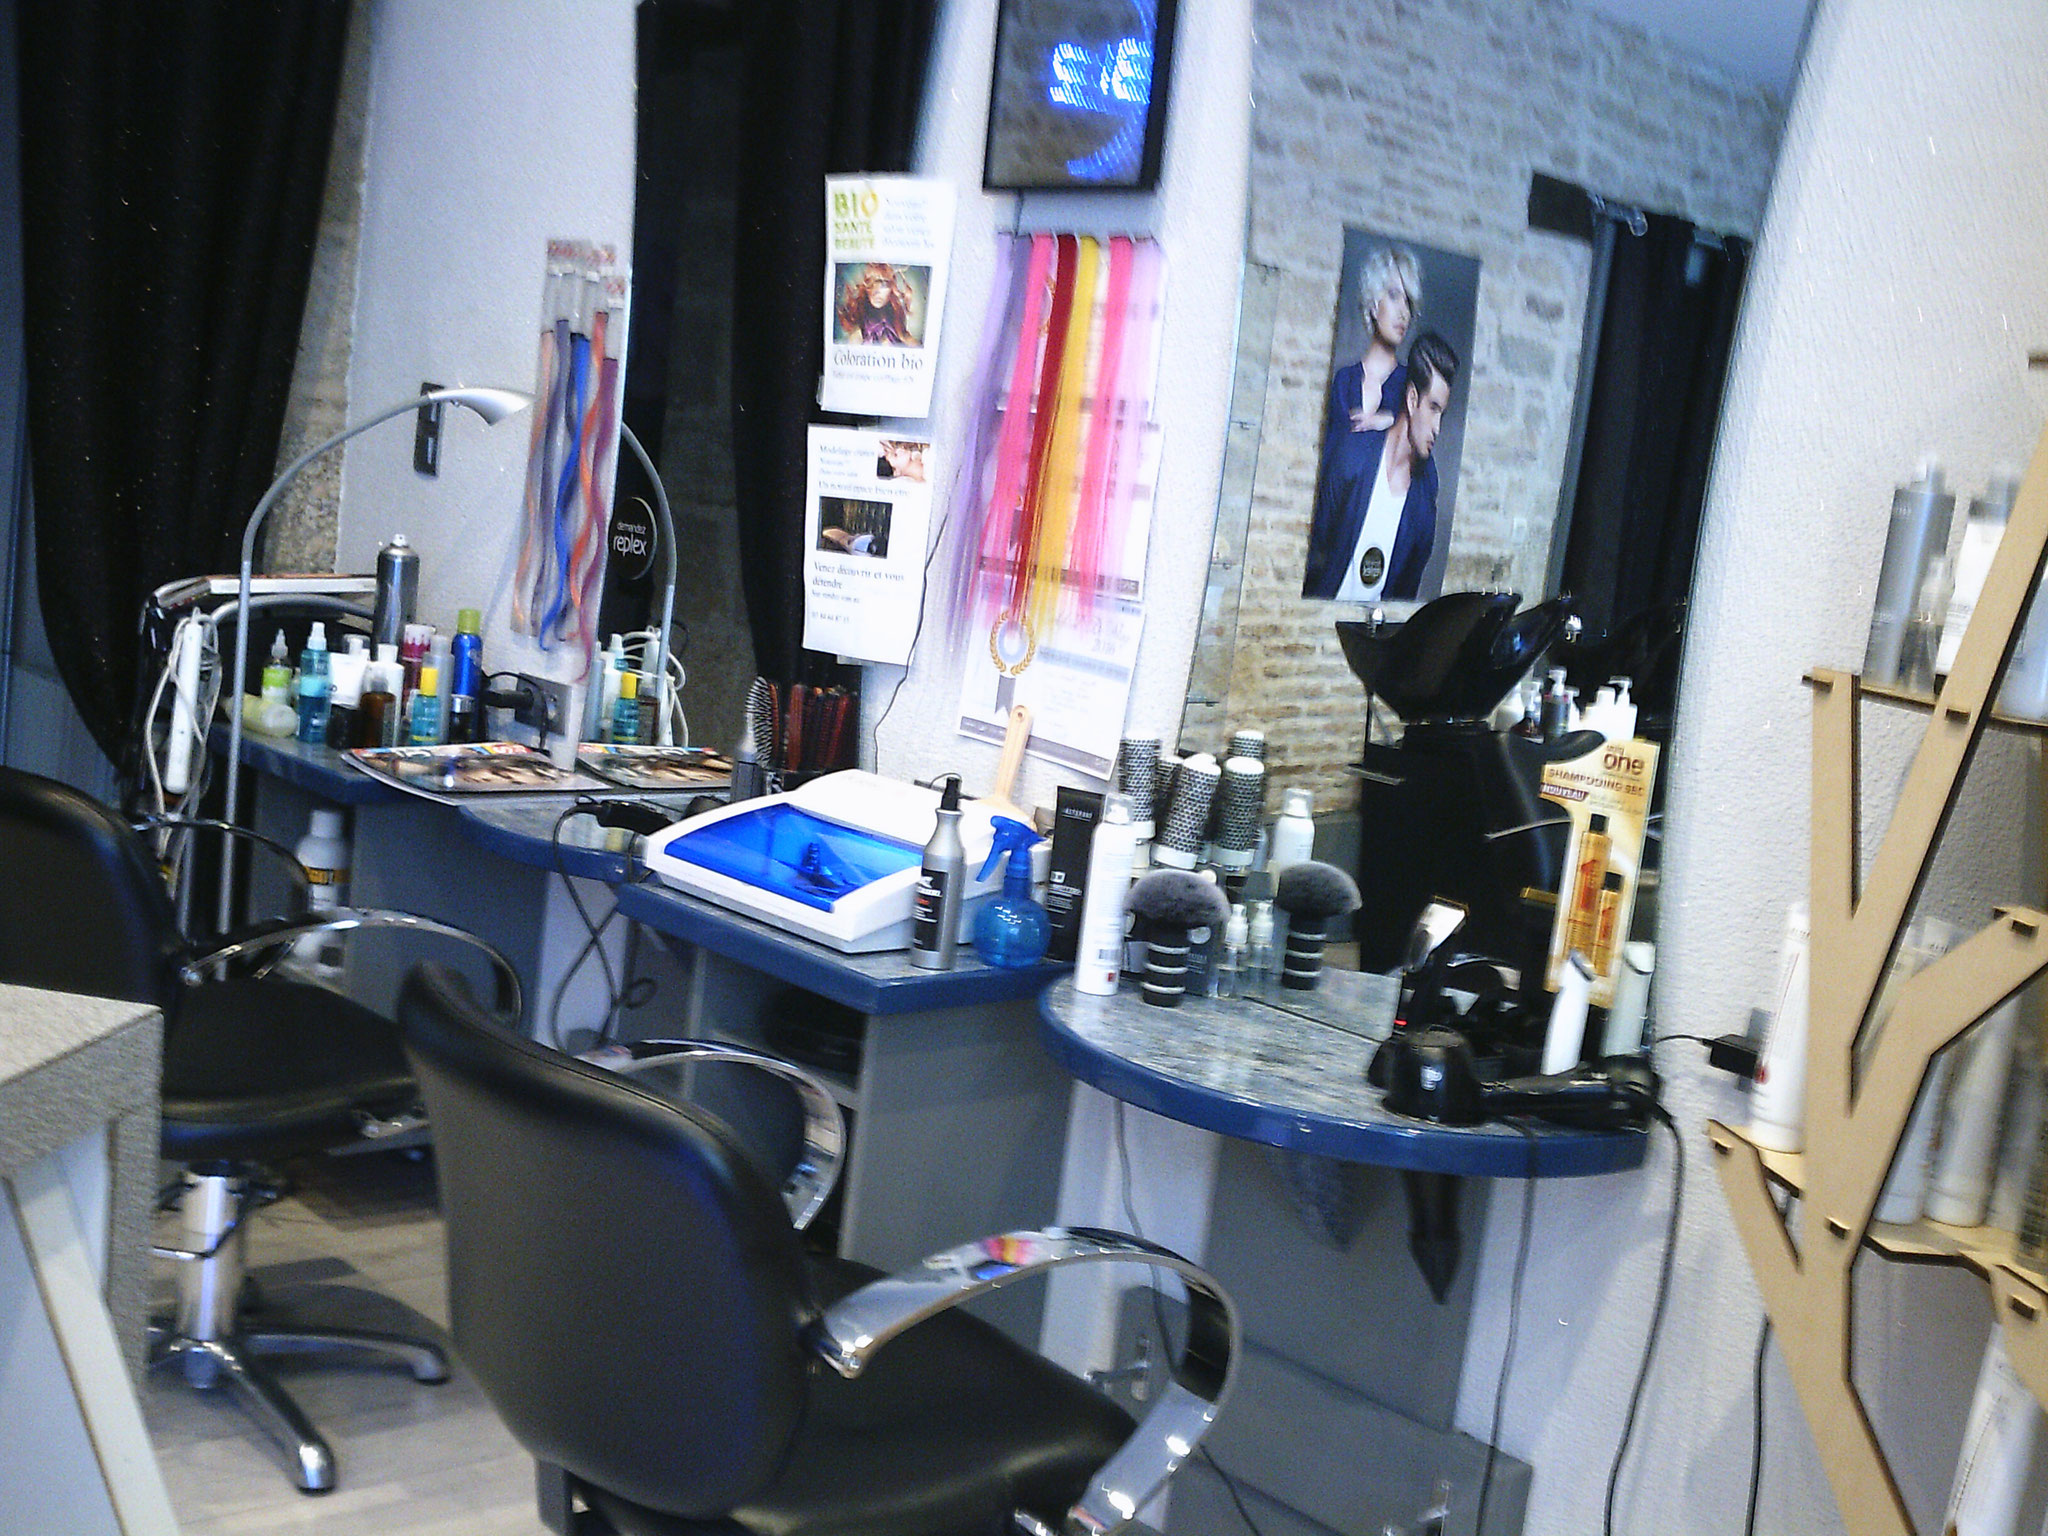 Salon de coiffure Gy'V coiffure Gy Haute Saone coiffeur visagiste